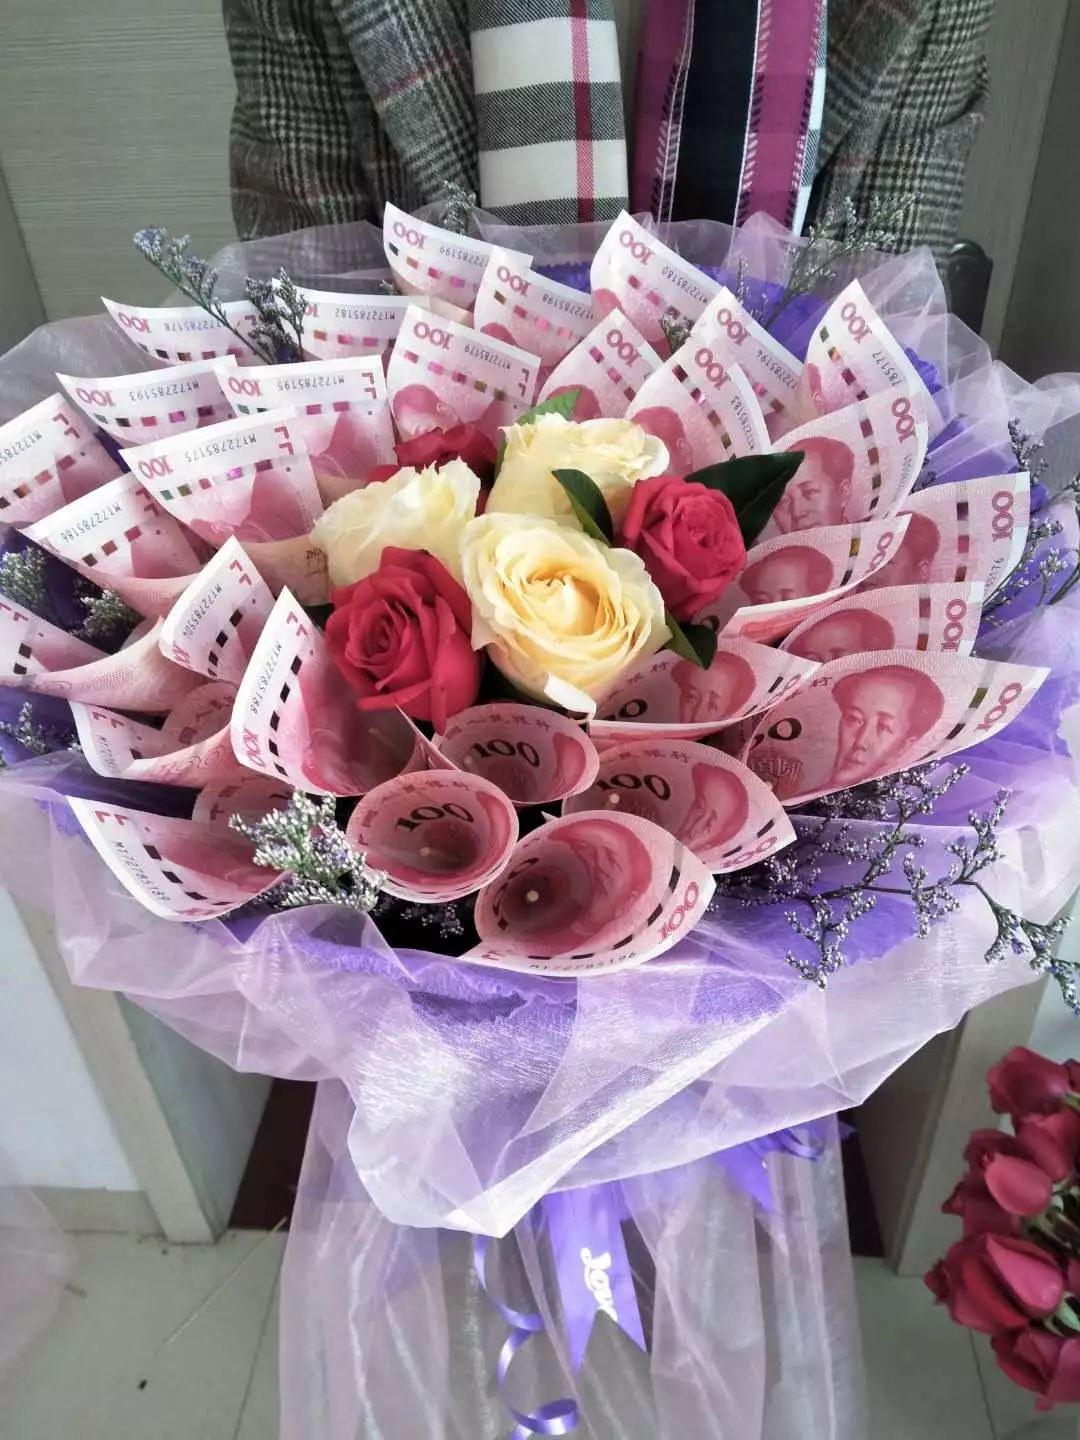 遇上对的人    每一天都是情人节    让鲜花传情 今天你送花了吗?